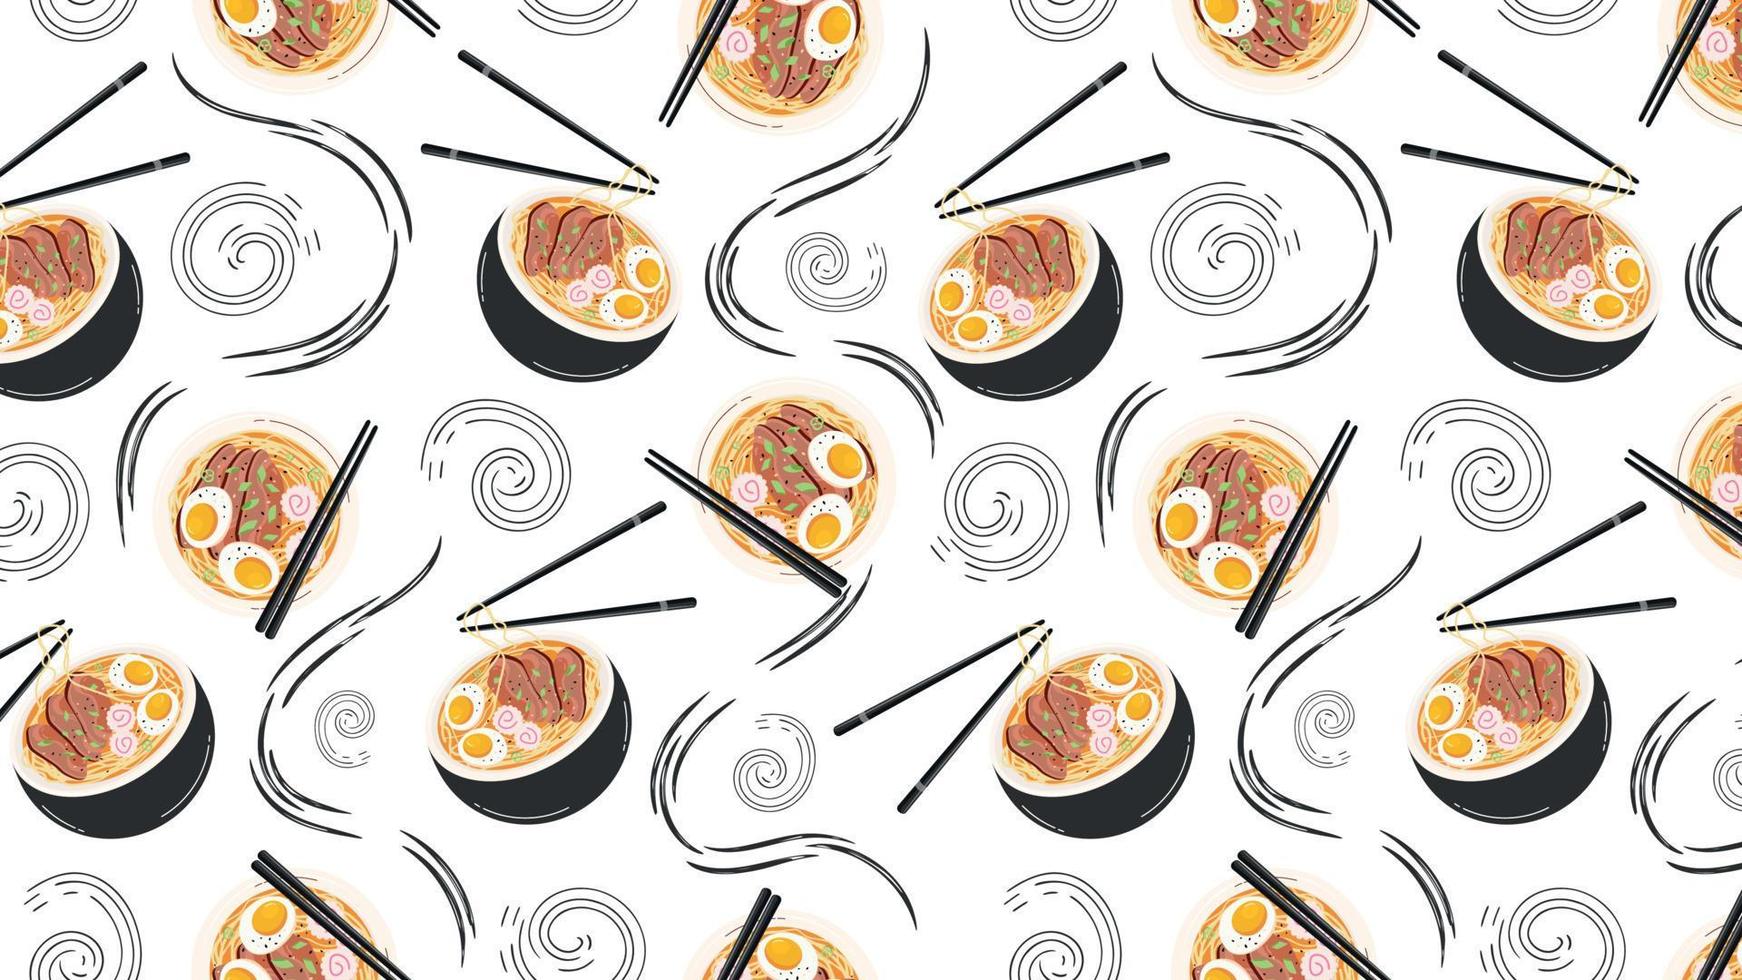 fondo horizontal con patrones sin fisuras con sopa de ramen japonesa. comida asiática para imprimir en papel, textiles, pancartas y fondos. vector